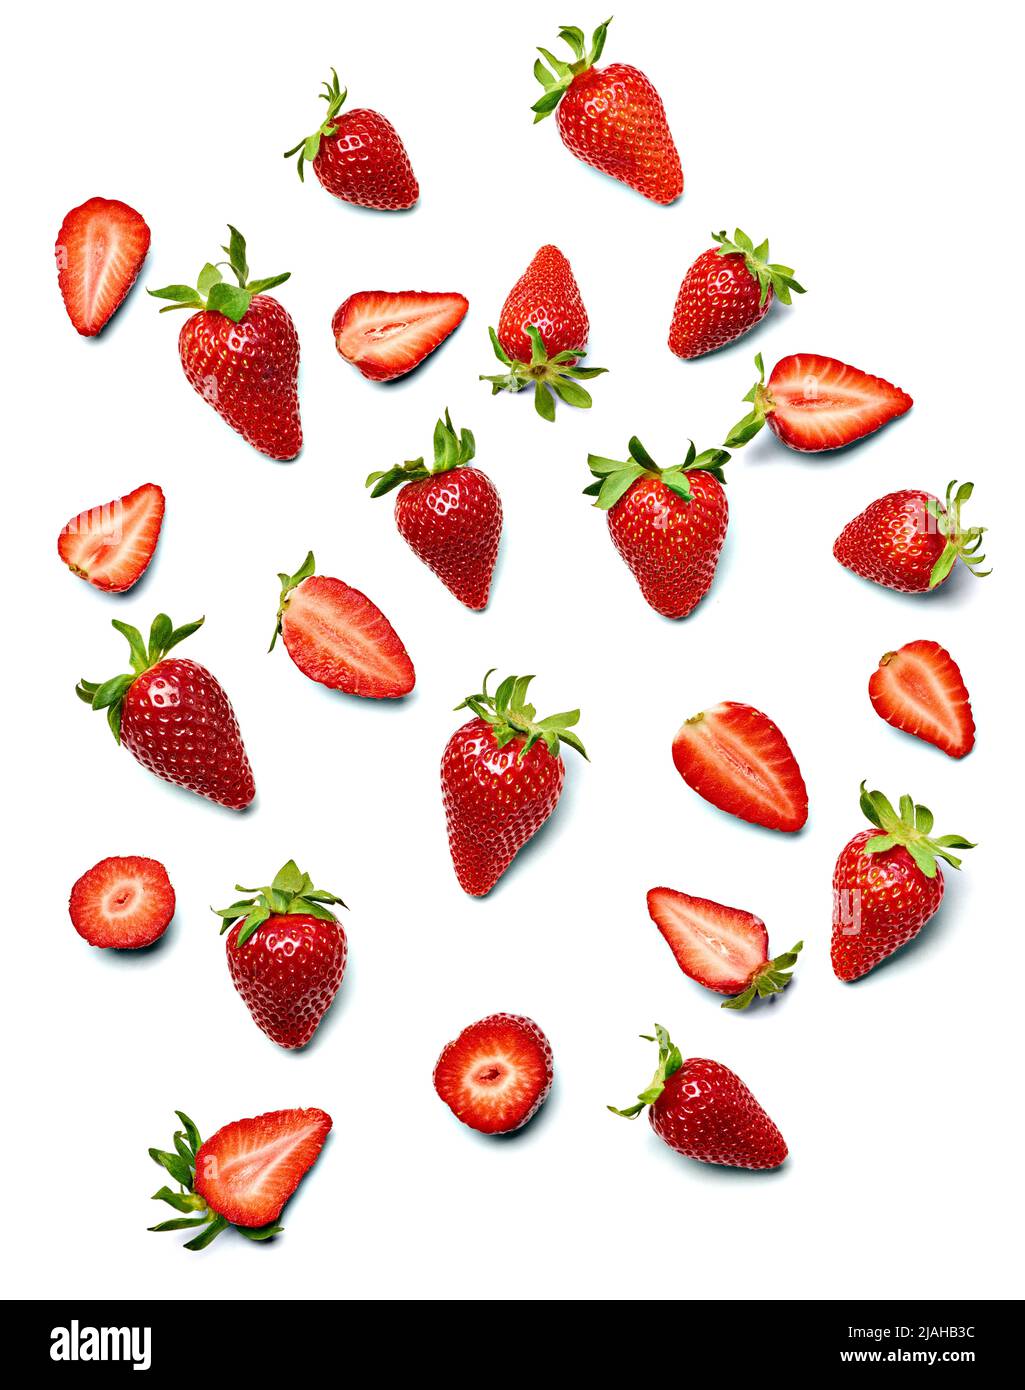 srtawberry frutos rojos frutos frescos de bayas alimentos maduros orgánicos jugosa dulce frescura Foto de stock